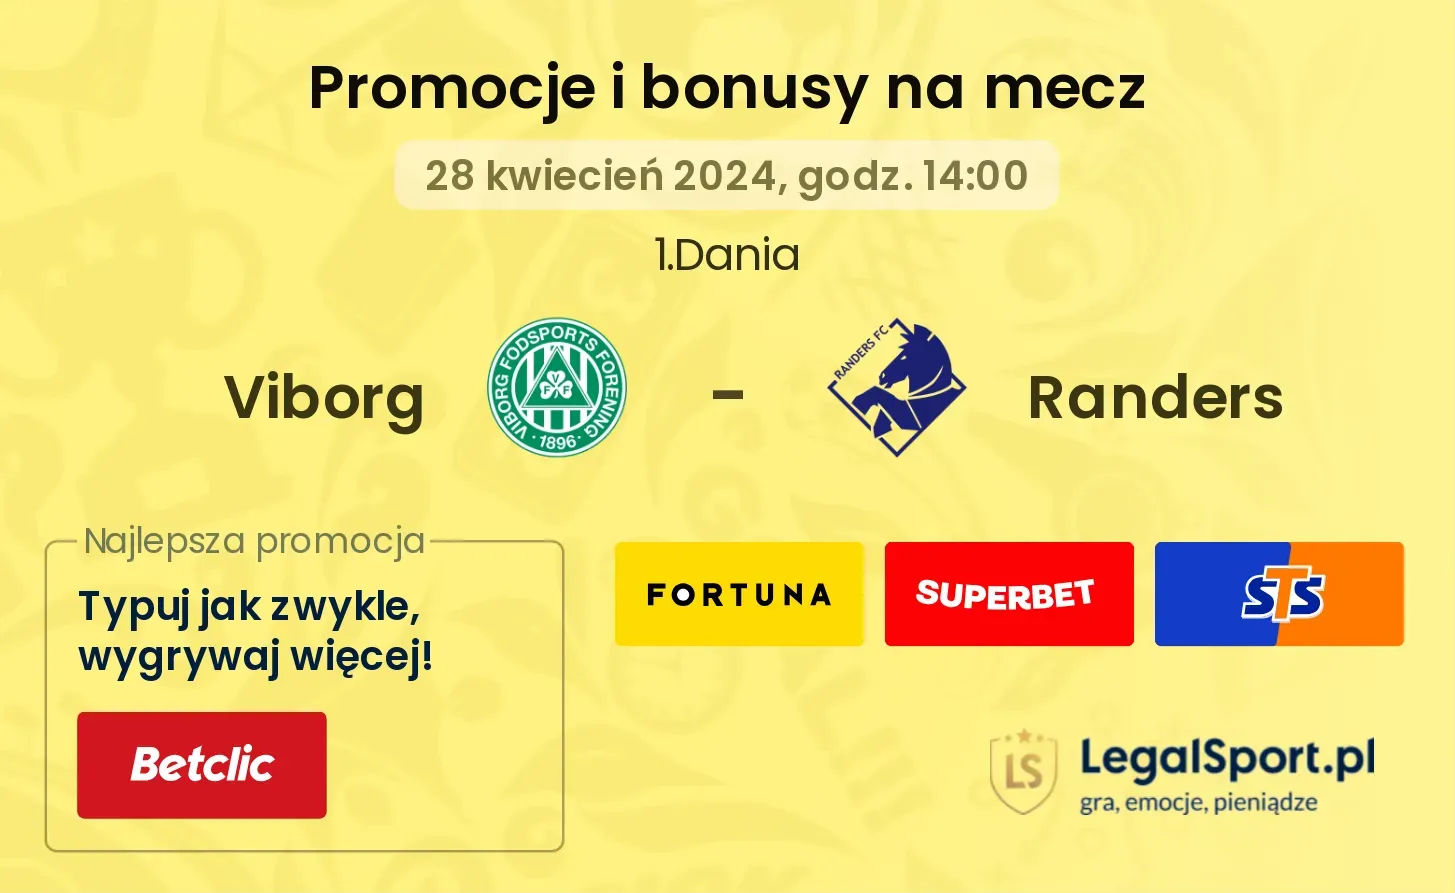 Viborg - Randers promocje bonusy na mecz